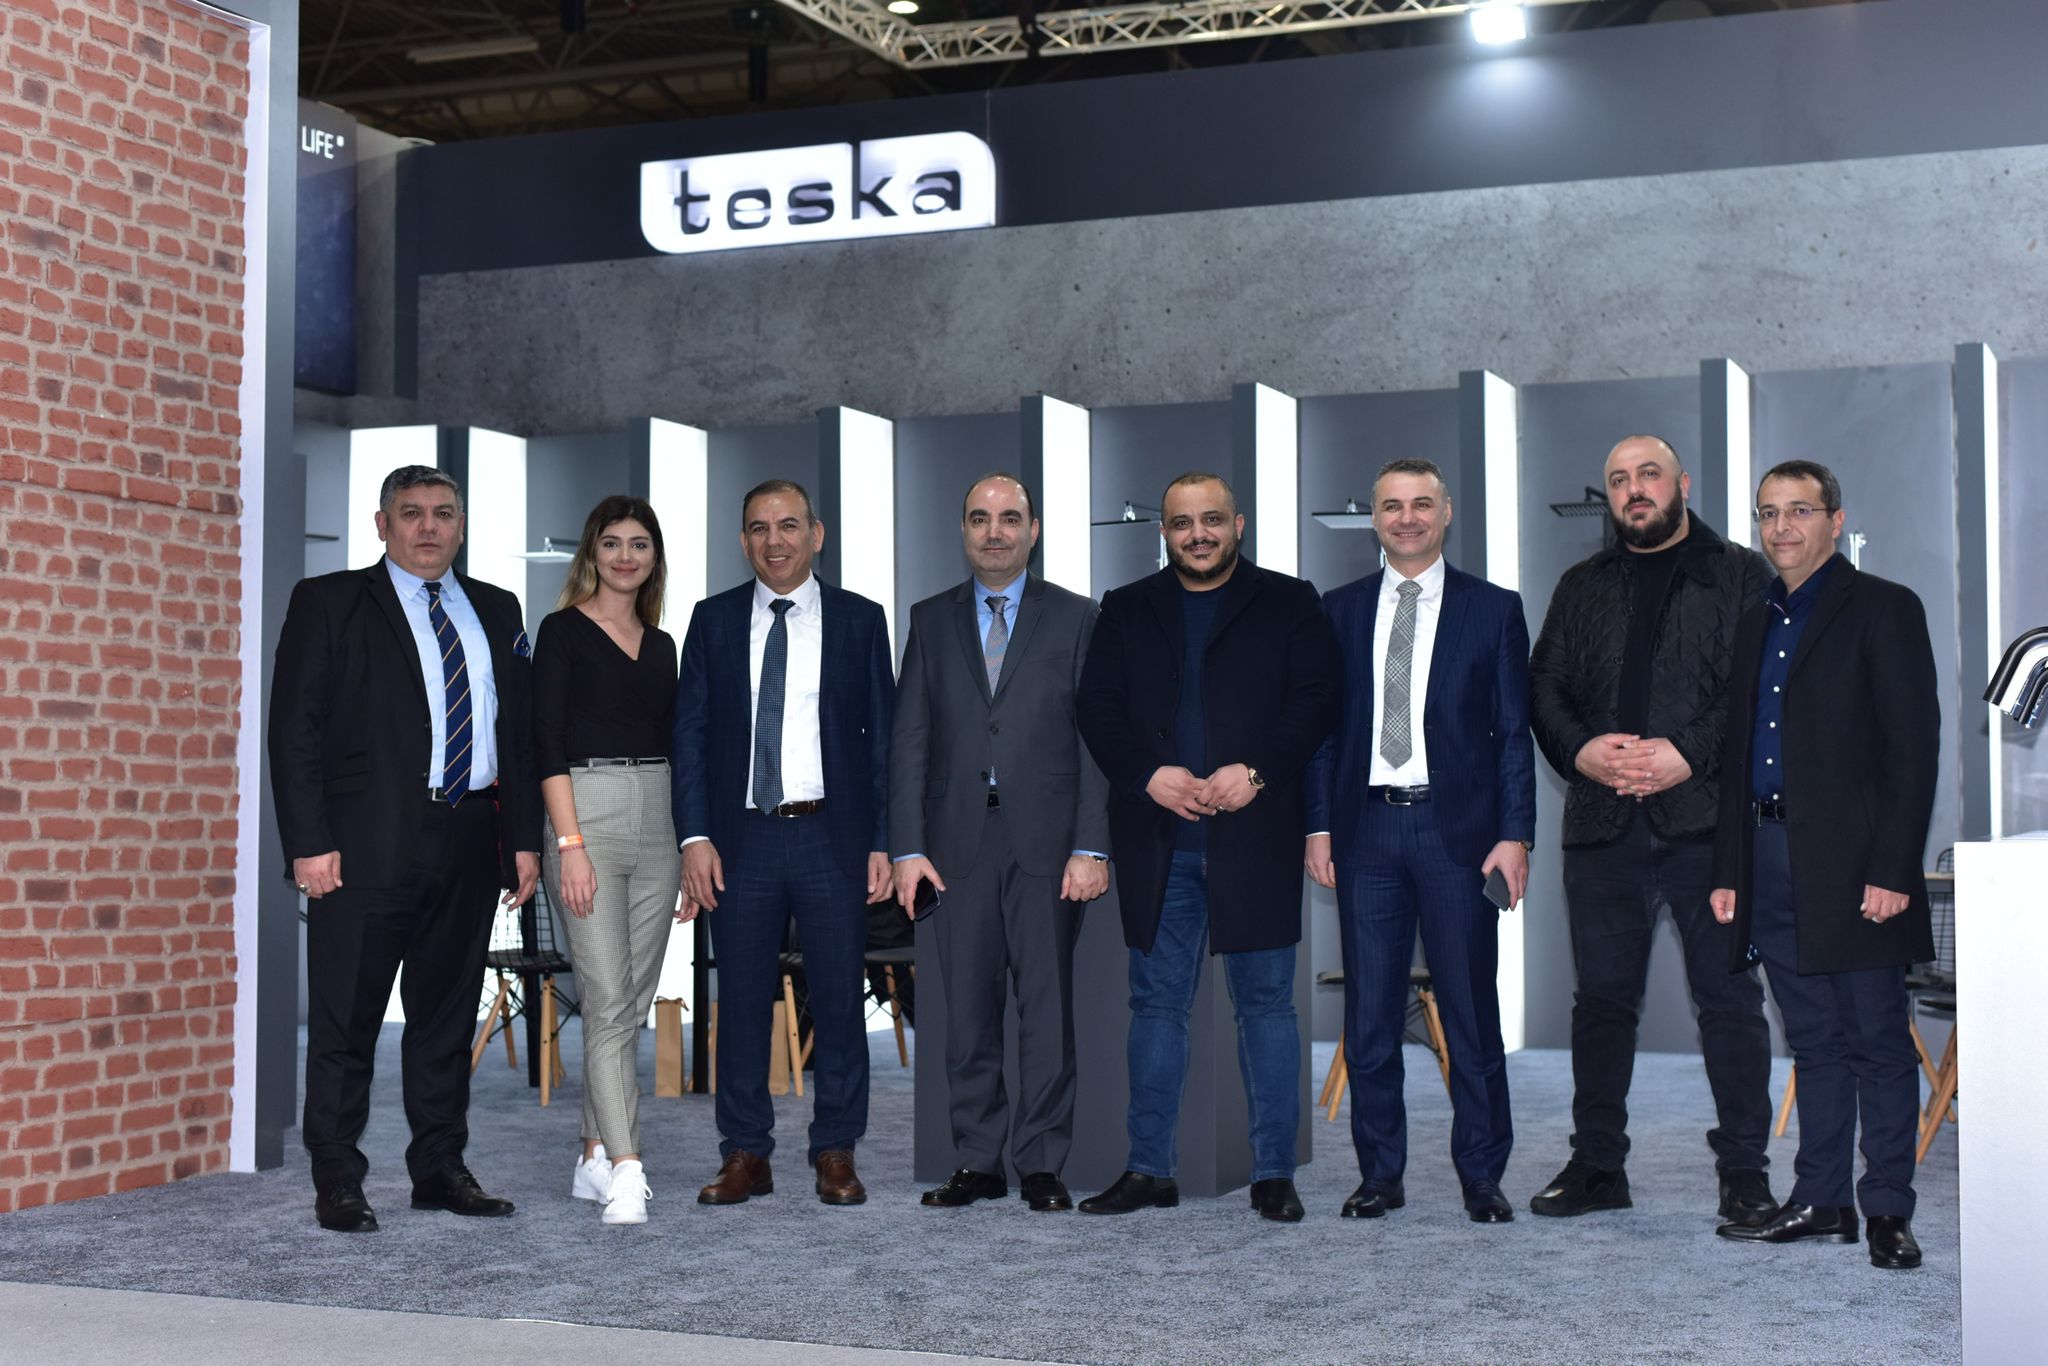 Birmingham Fuarı’nda Türk şirketi TESKA'ya büyü